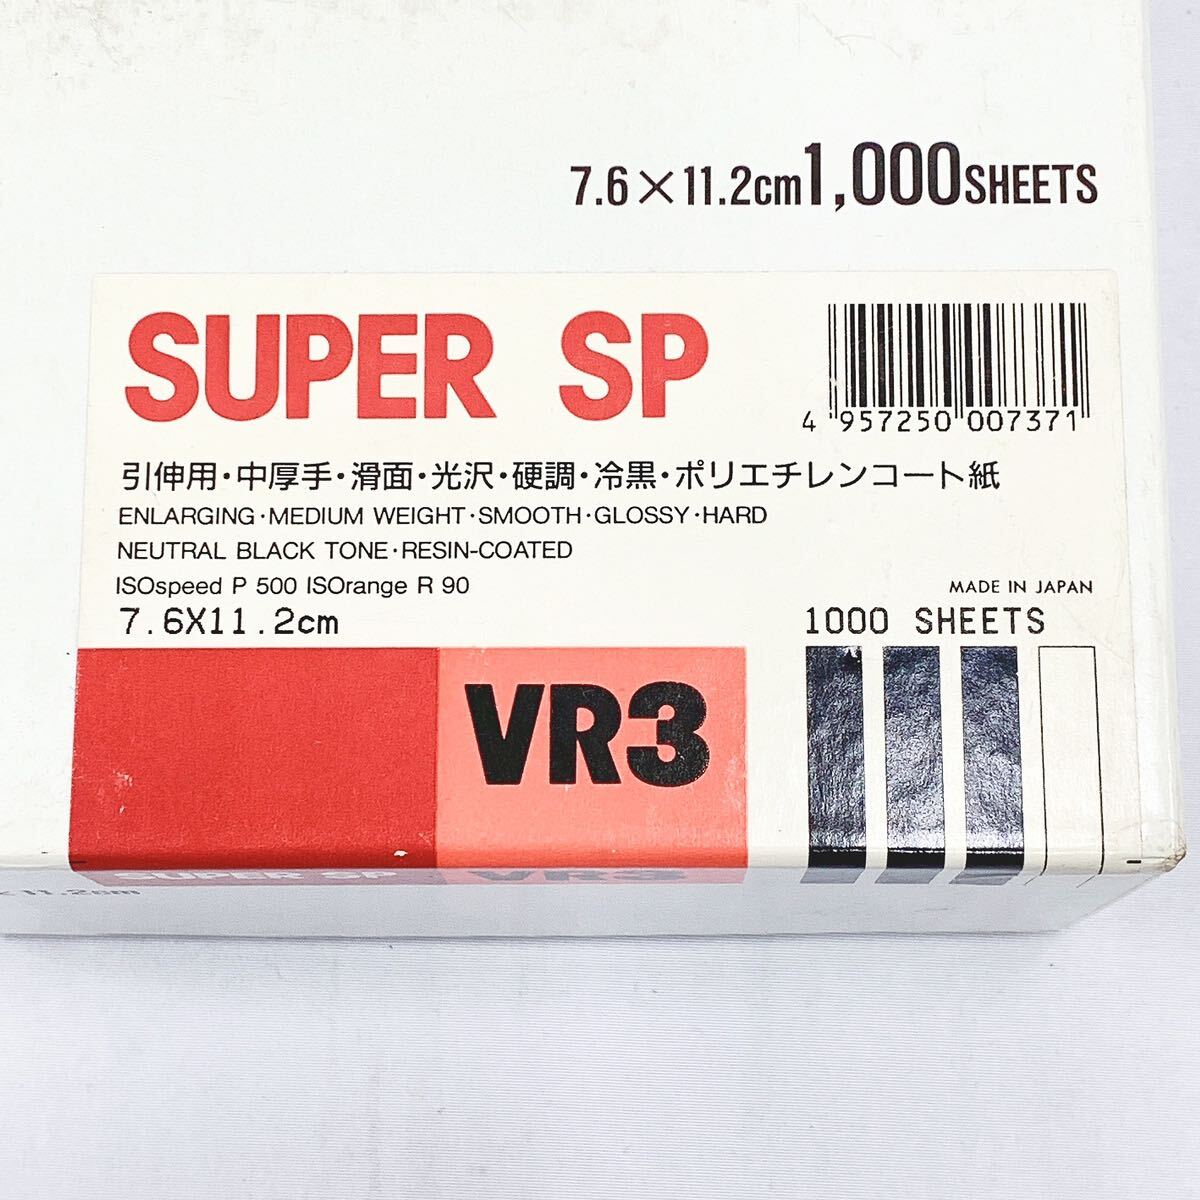  не использовался хранение товар Mitsubishi MITSUBISHI GEKKO SUPER SP VR3.. для печать . бумага 7.6×11.2cm 2000 листов /13×18cm 250 листов 05-0420*